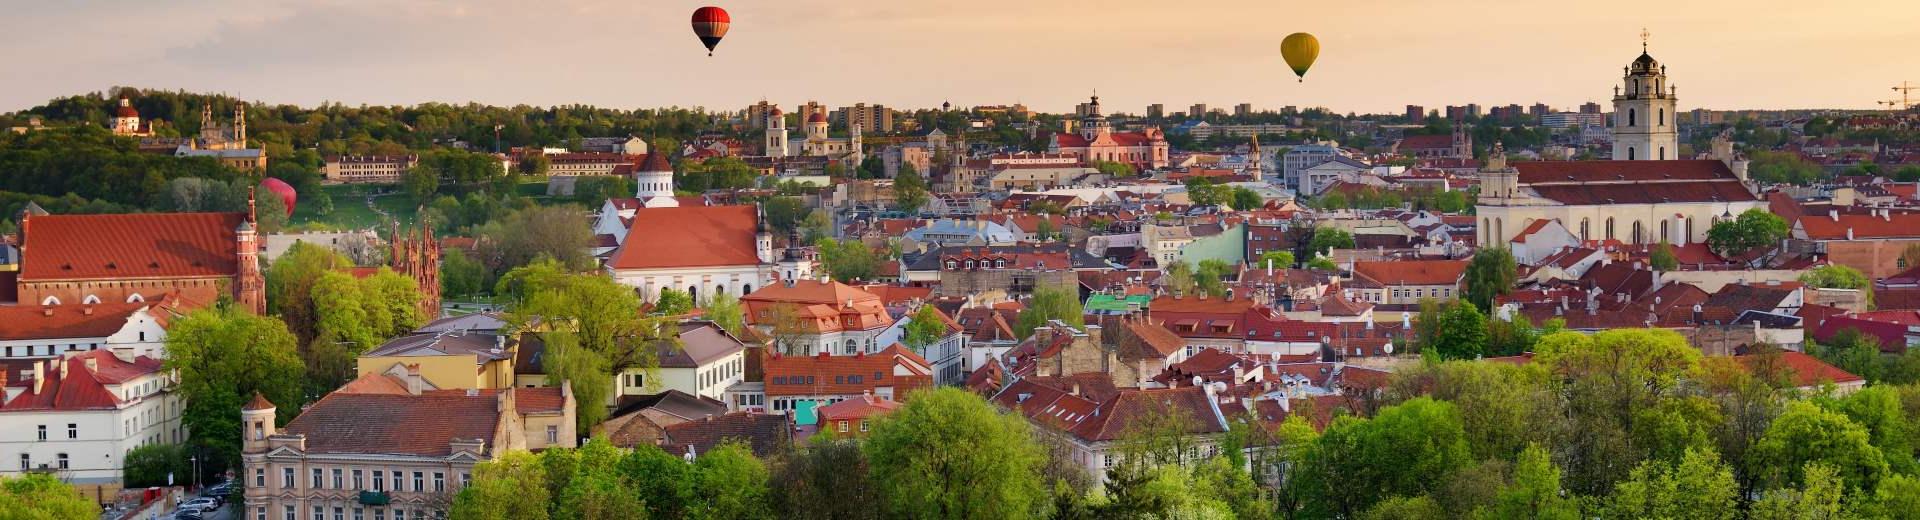 Ferienwohnungen & Ferienhäuser für Urlaub in Vilnius - Casamundo